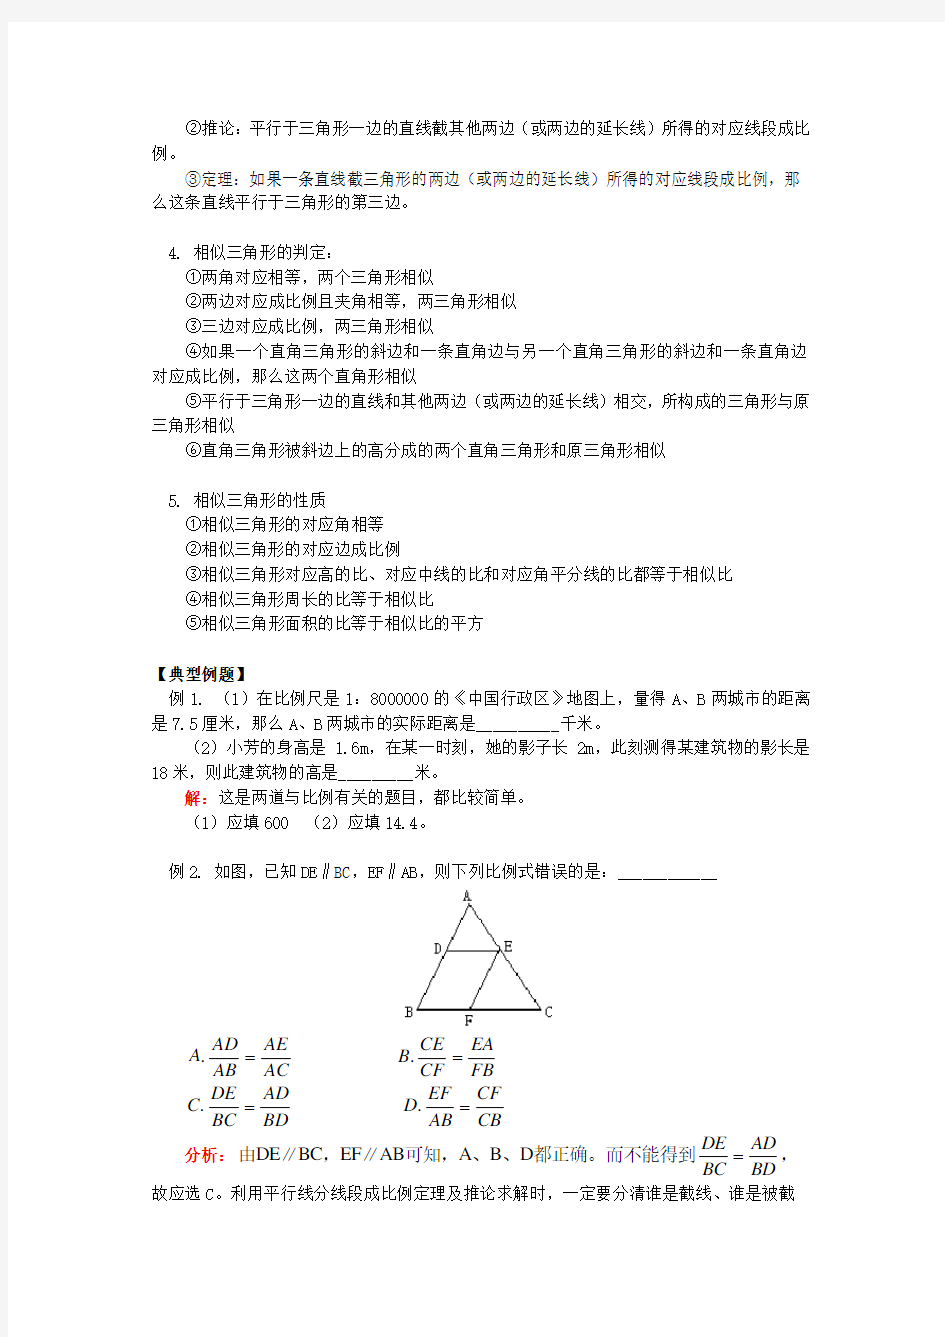 (完整版)初三数学相似三角形典型例题(含答案)